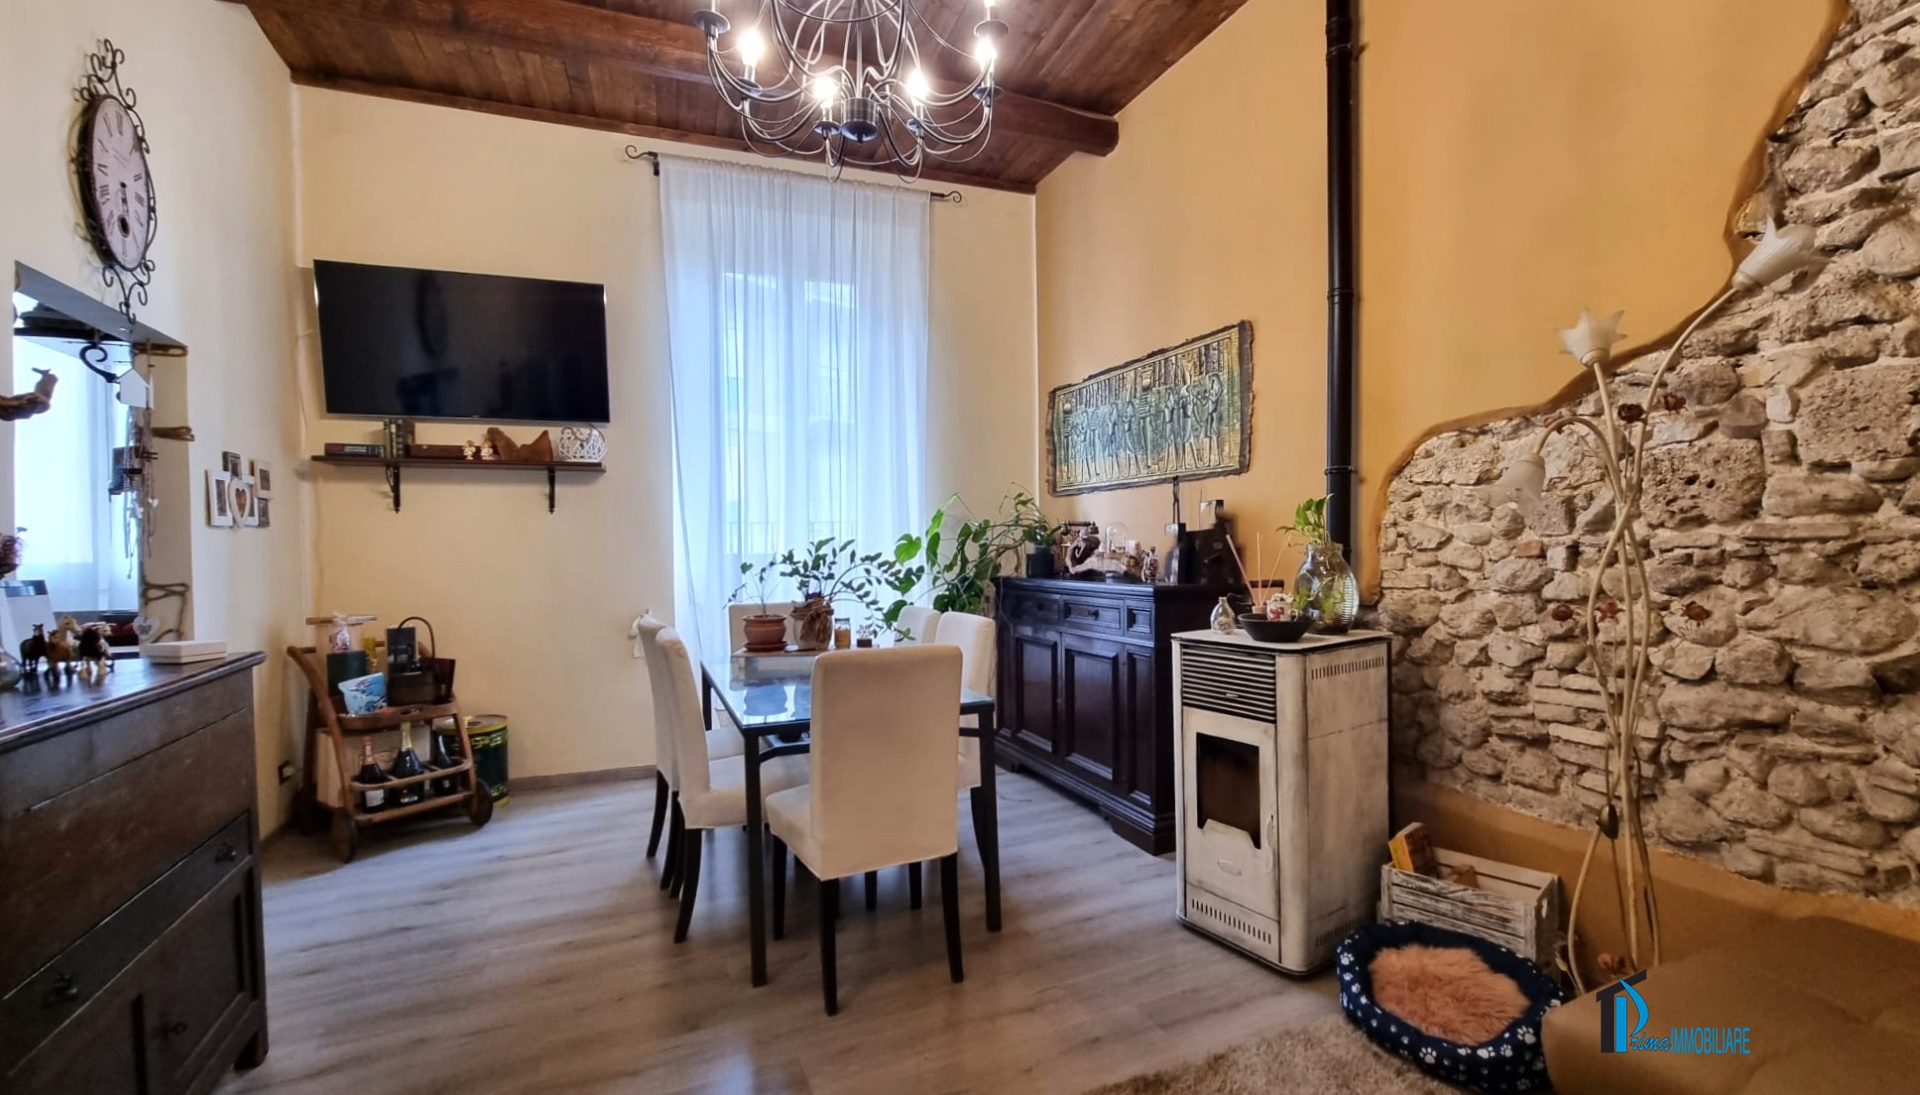 Appartamento in vendita a Terni, 5 locali, prezzo € 115.000 | PortaleAgenzieImmobiliari.it